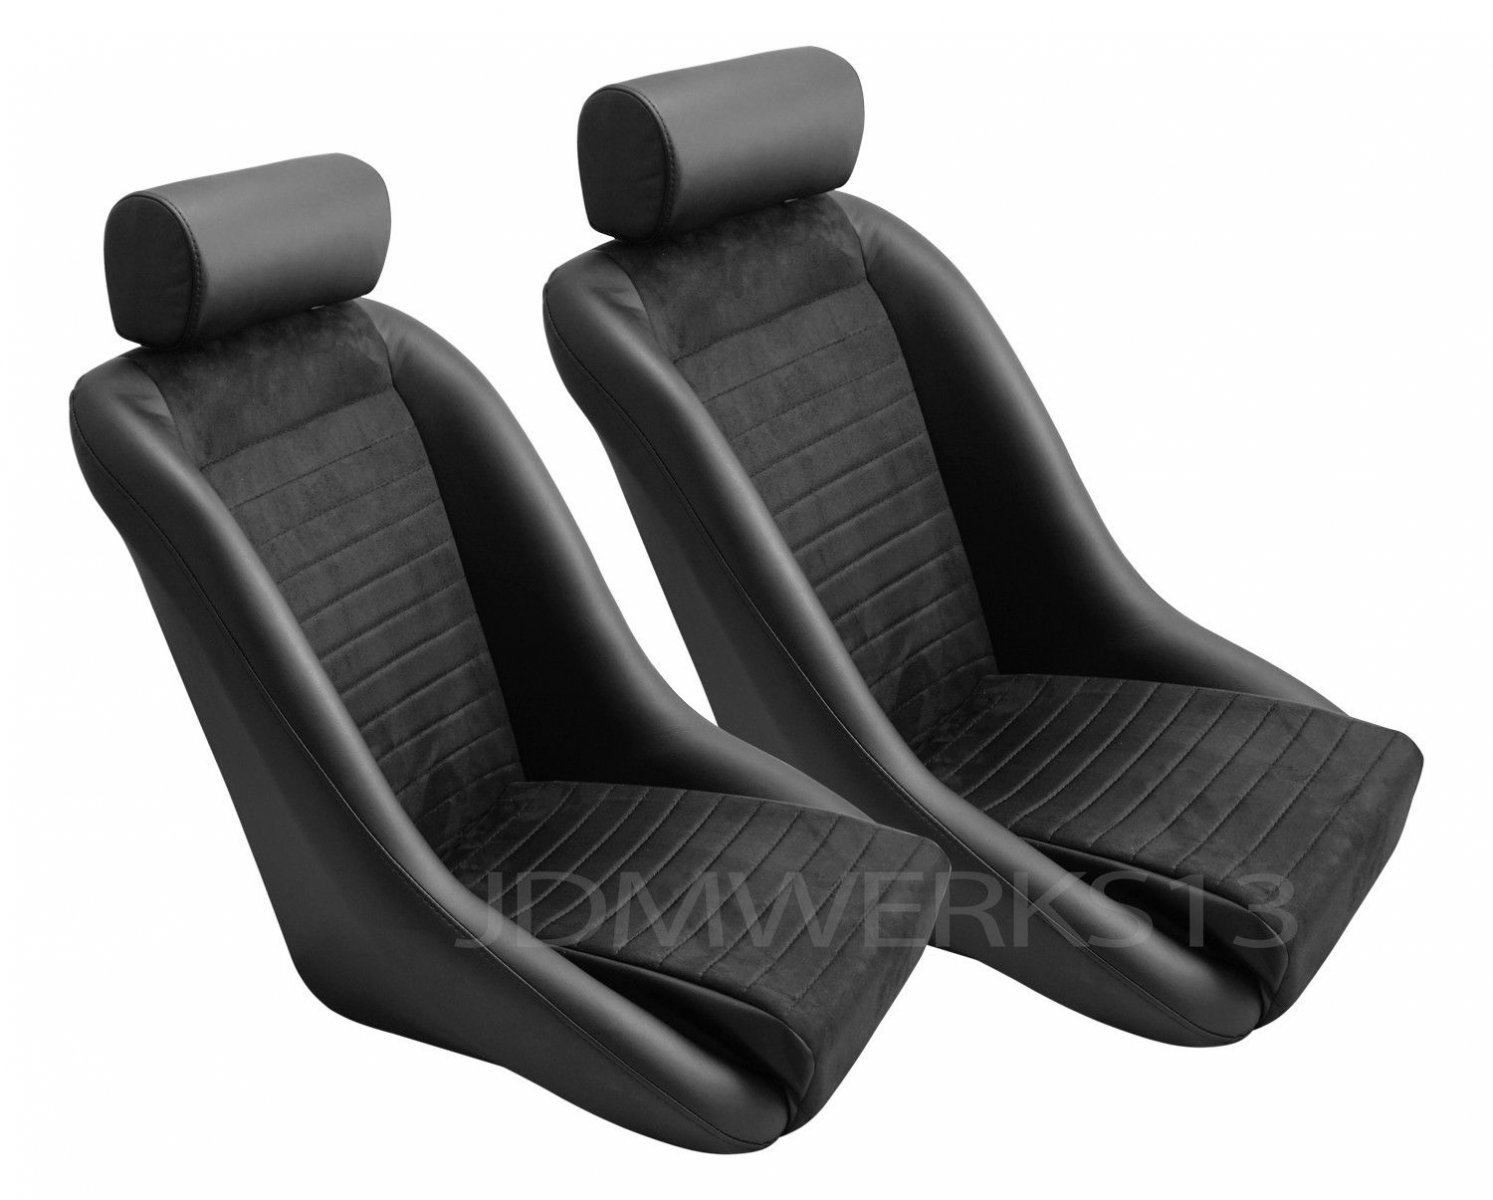 Fiat_Seats_2.jpg